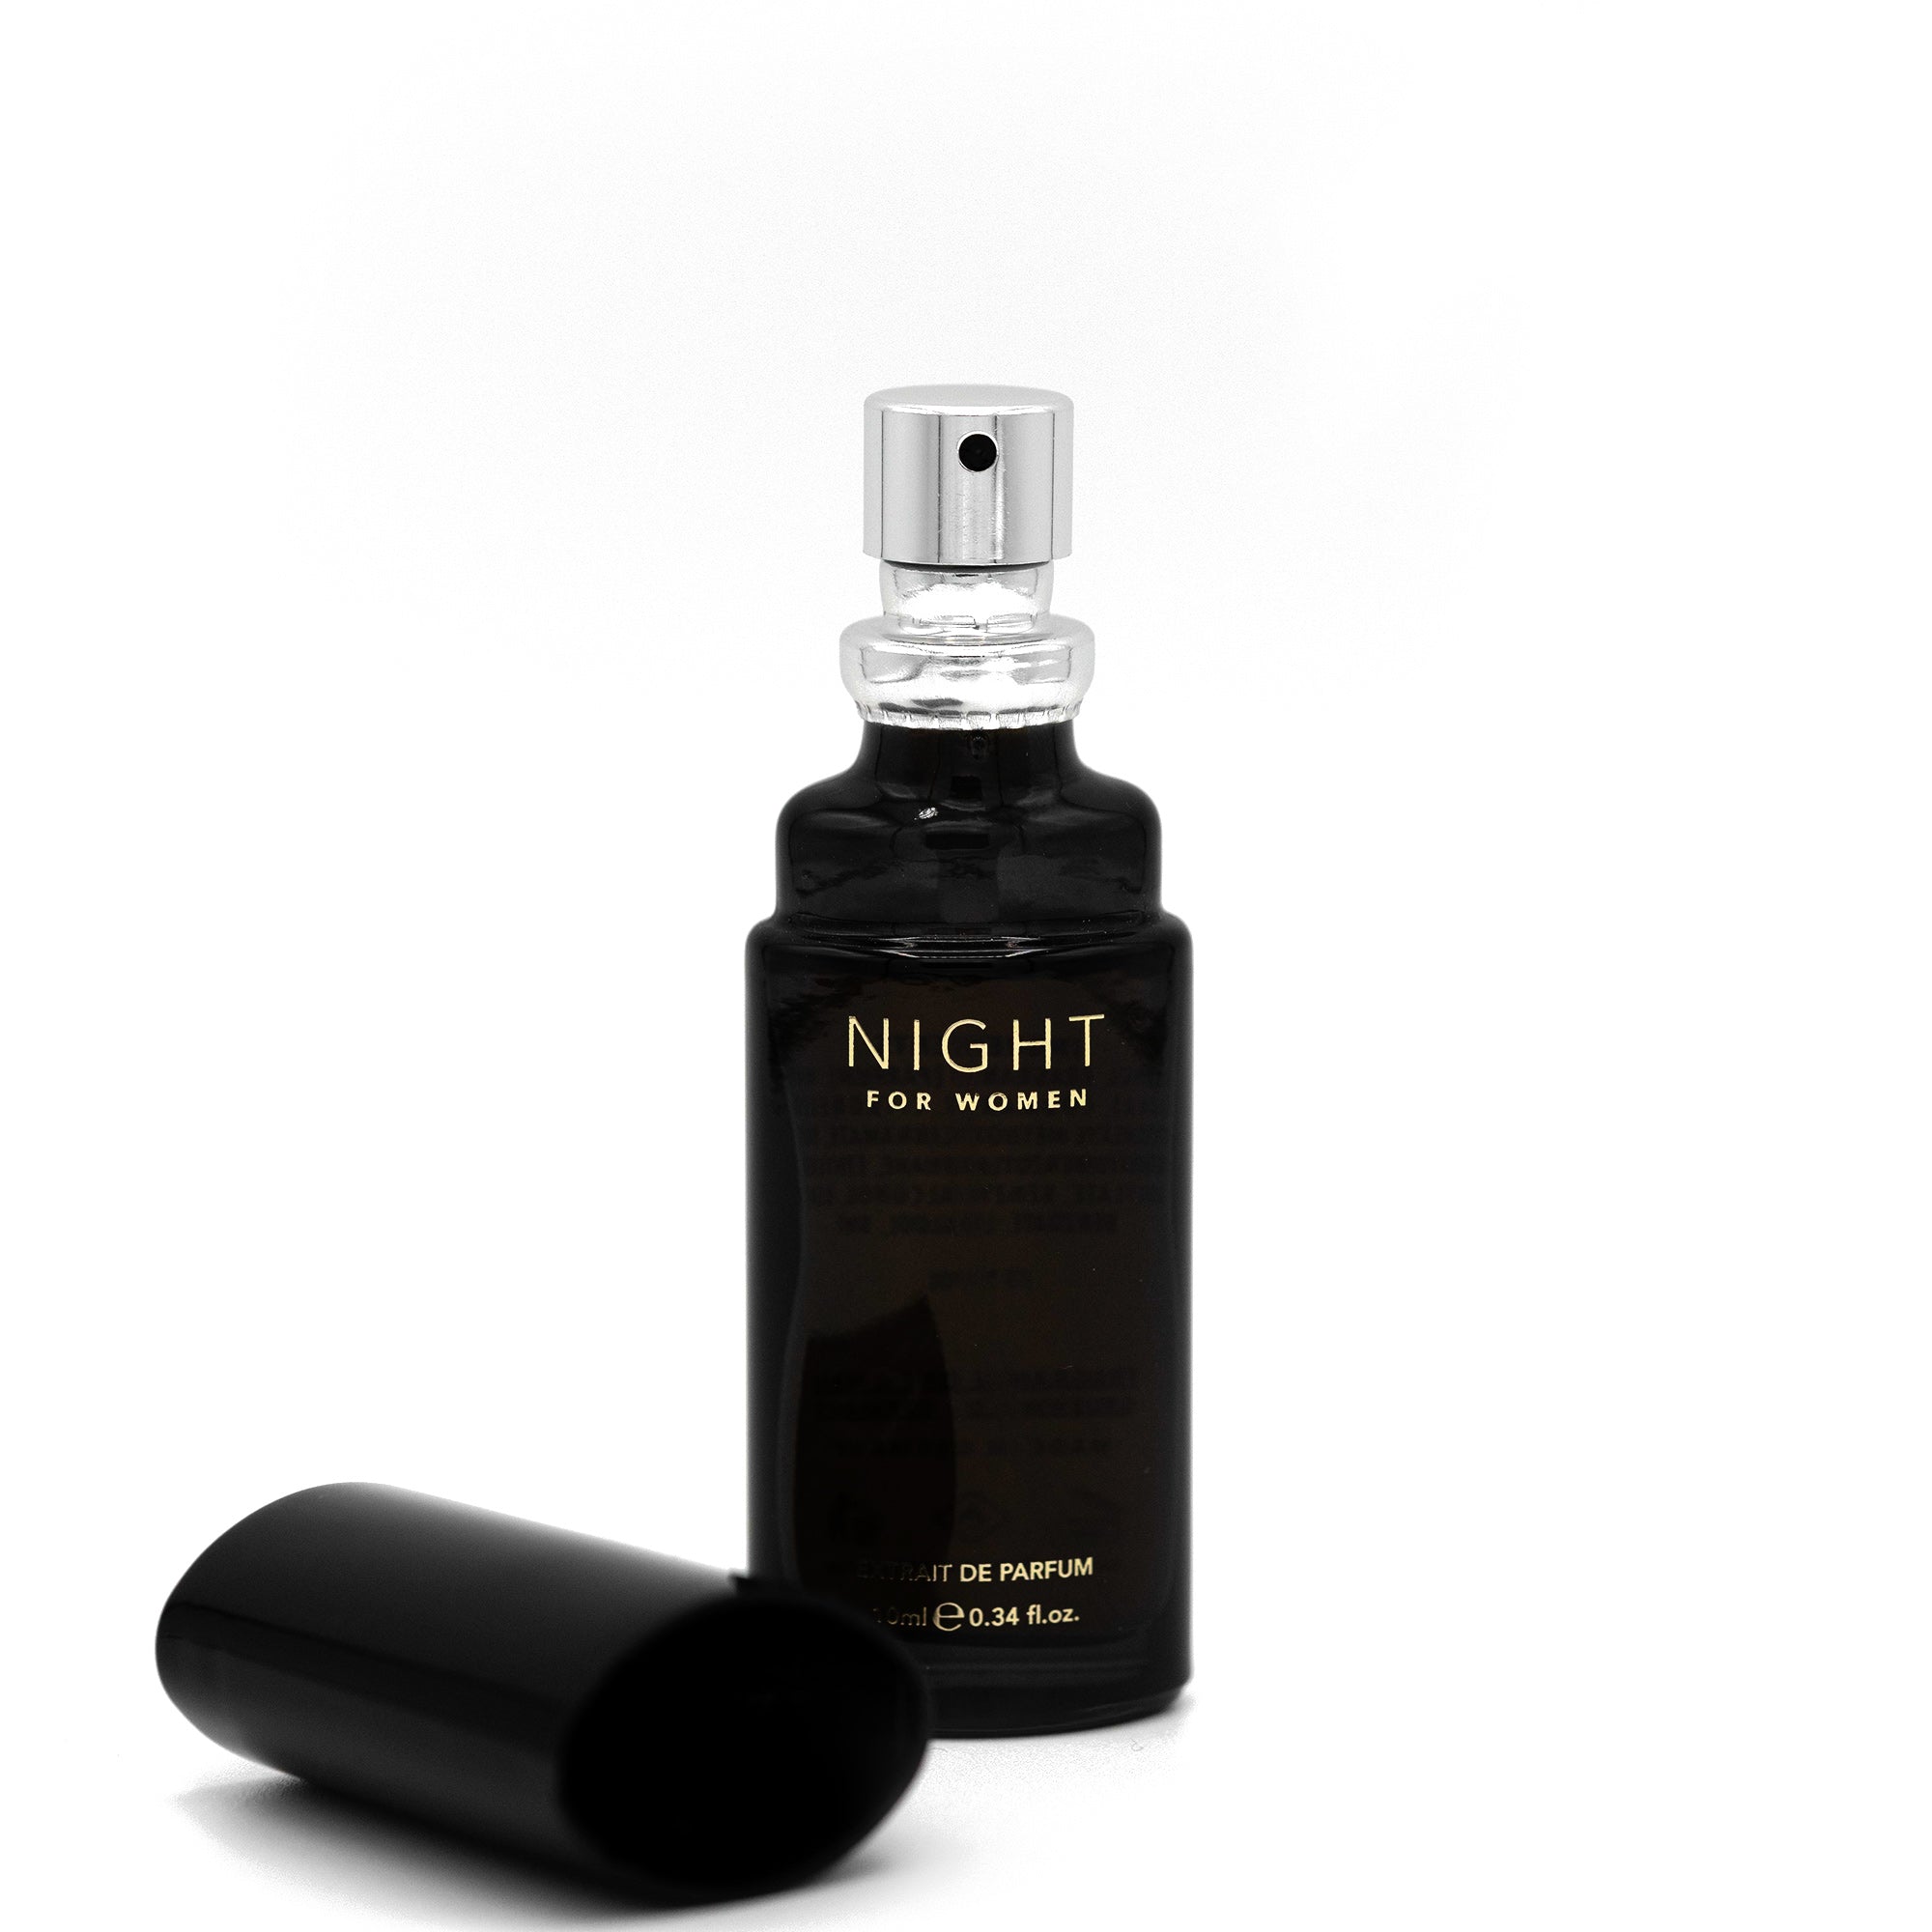 NIGHT for Women fragrance bottle 10ml open cap